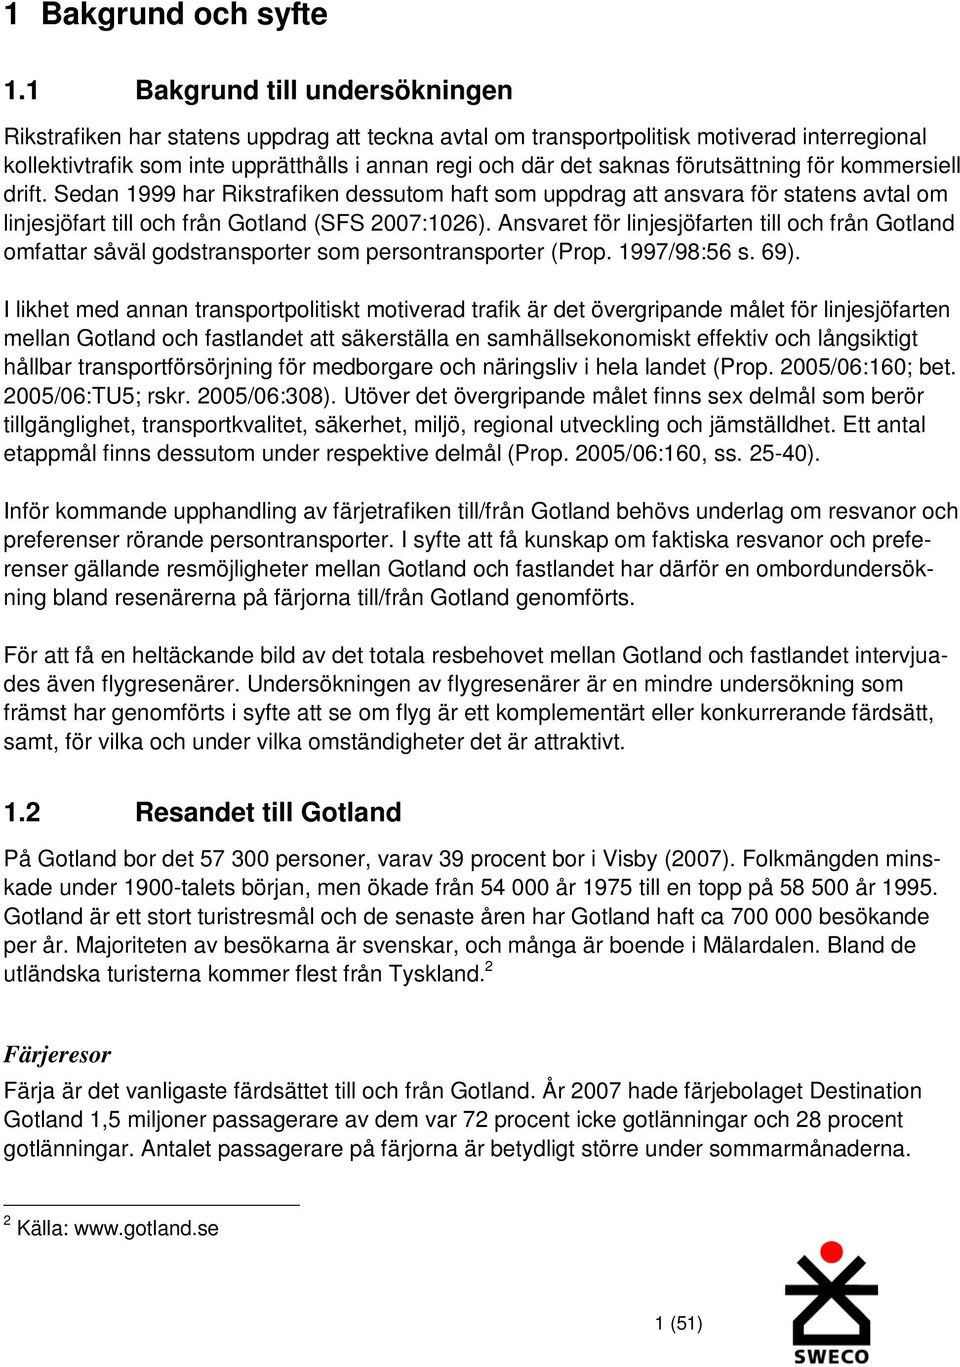 förutsättning för kommersiell drift. Sedan 1999 har Rikstrafiken dessutom haft som uppdrag att ansvara för statens avtal om linjesjöfart till och från Gotland (SFS 2007:1026).